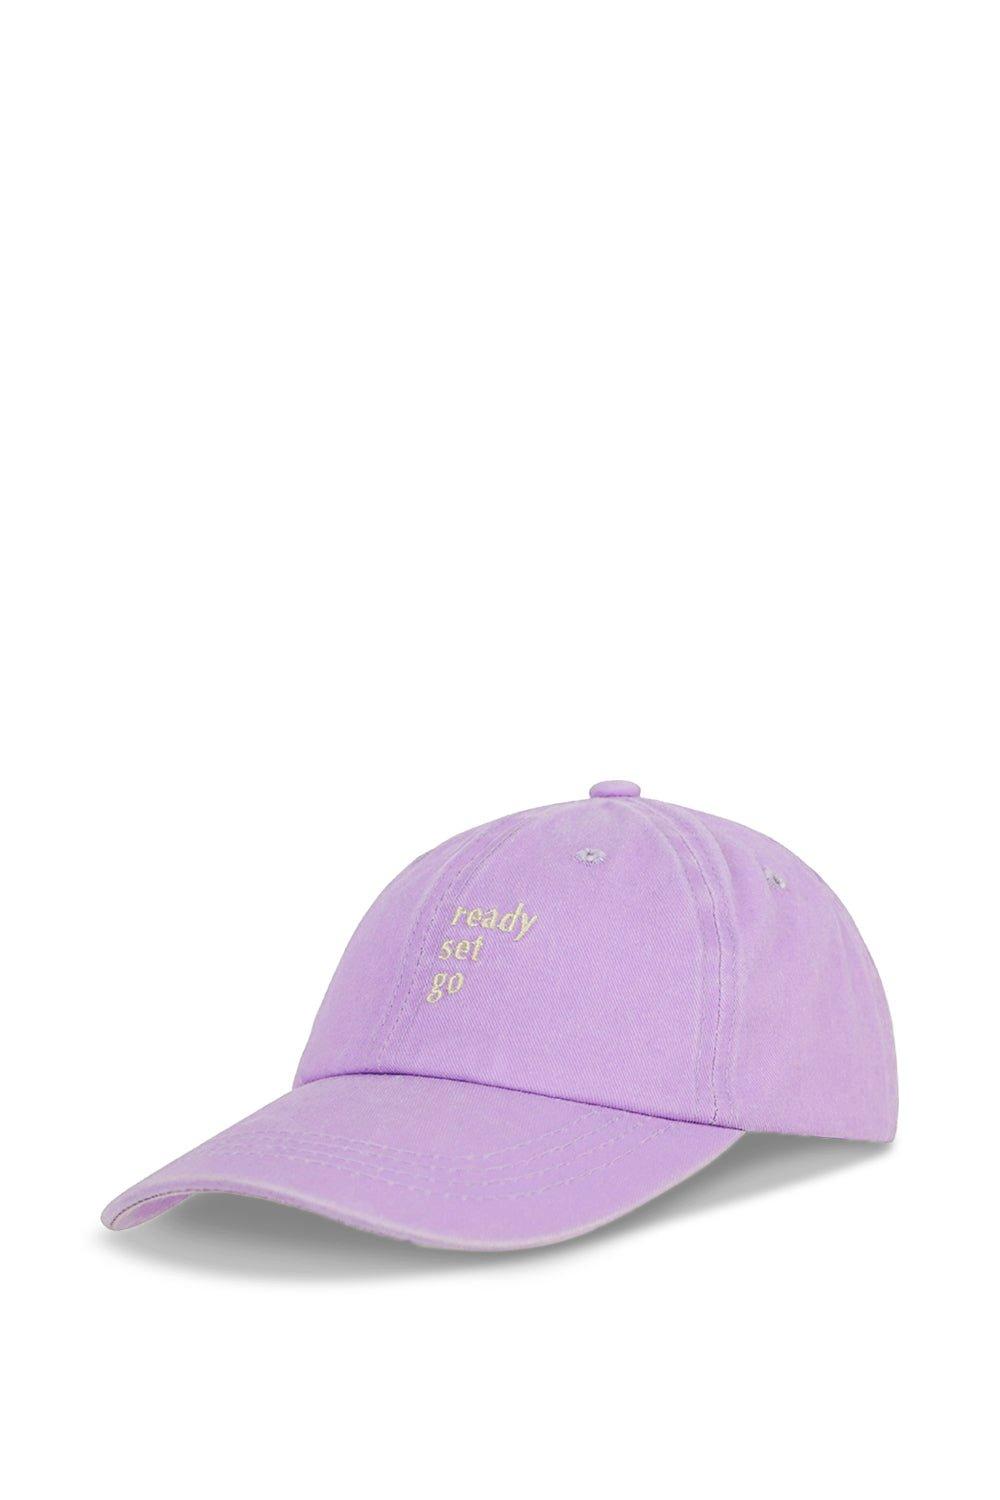 READY SET GO Бейсболка с мытой отделкой My Accessories London, фиолетовый оригинальная кепка с вышивкой bmw новая спортивная кепка bmw бейсболка кепка для гольфа